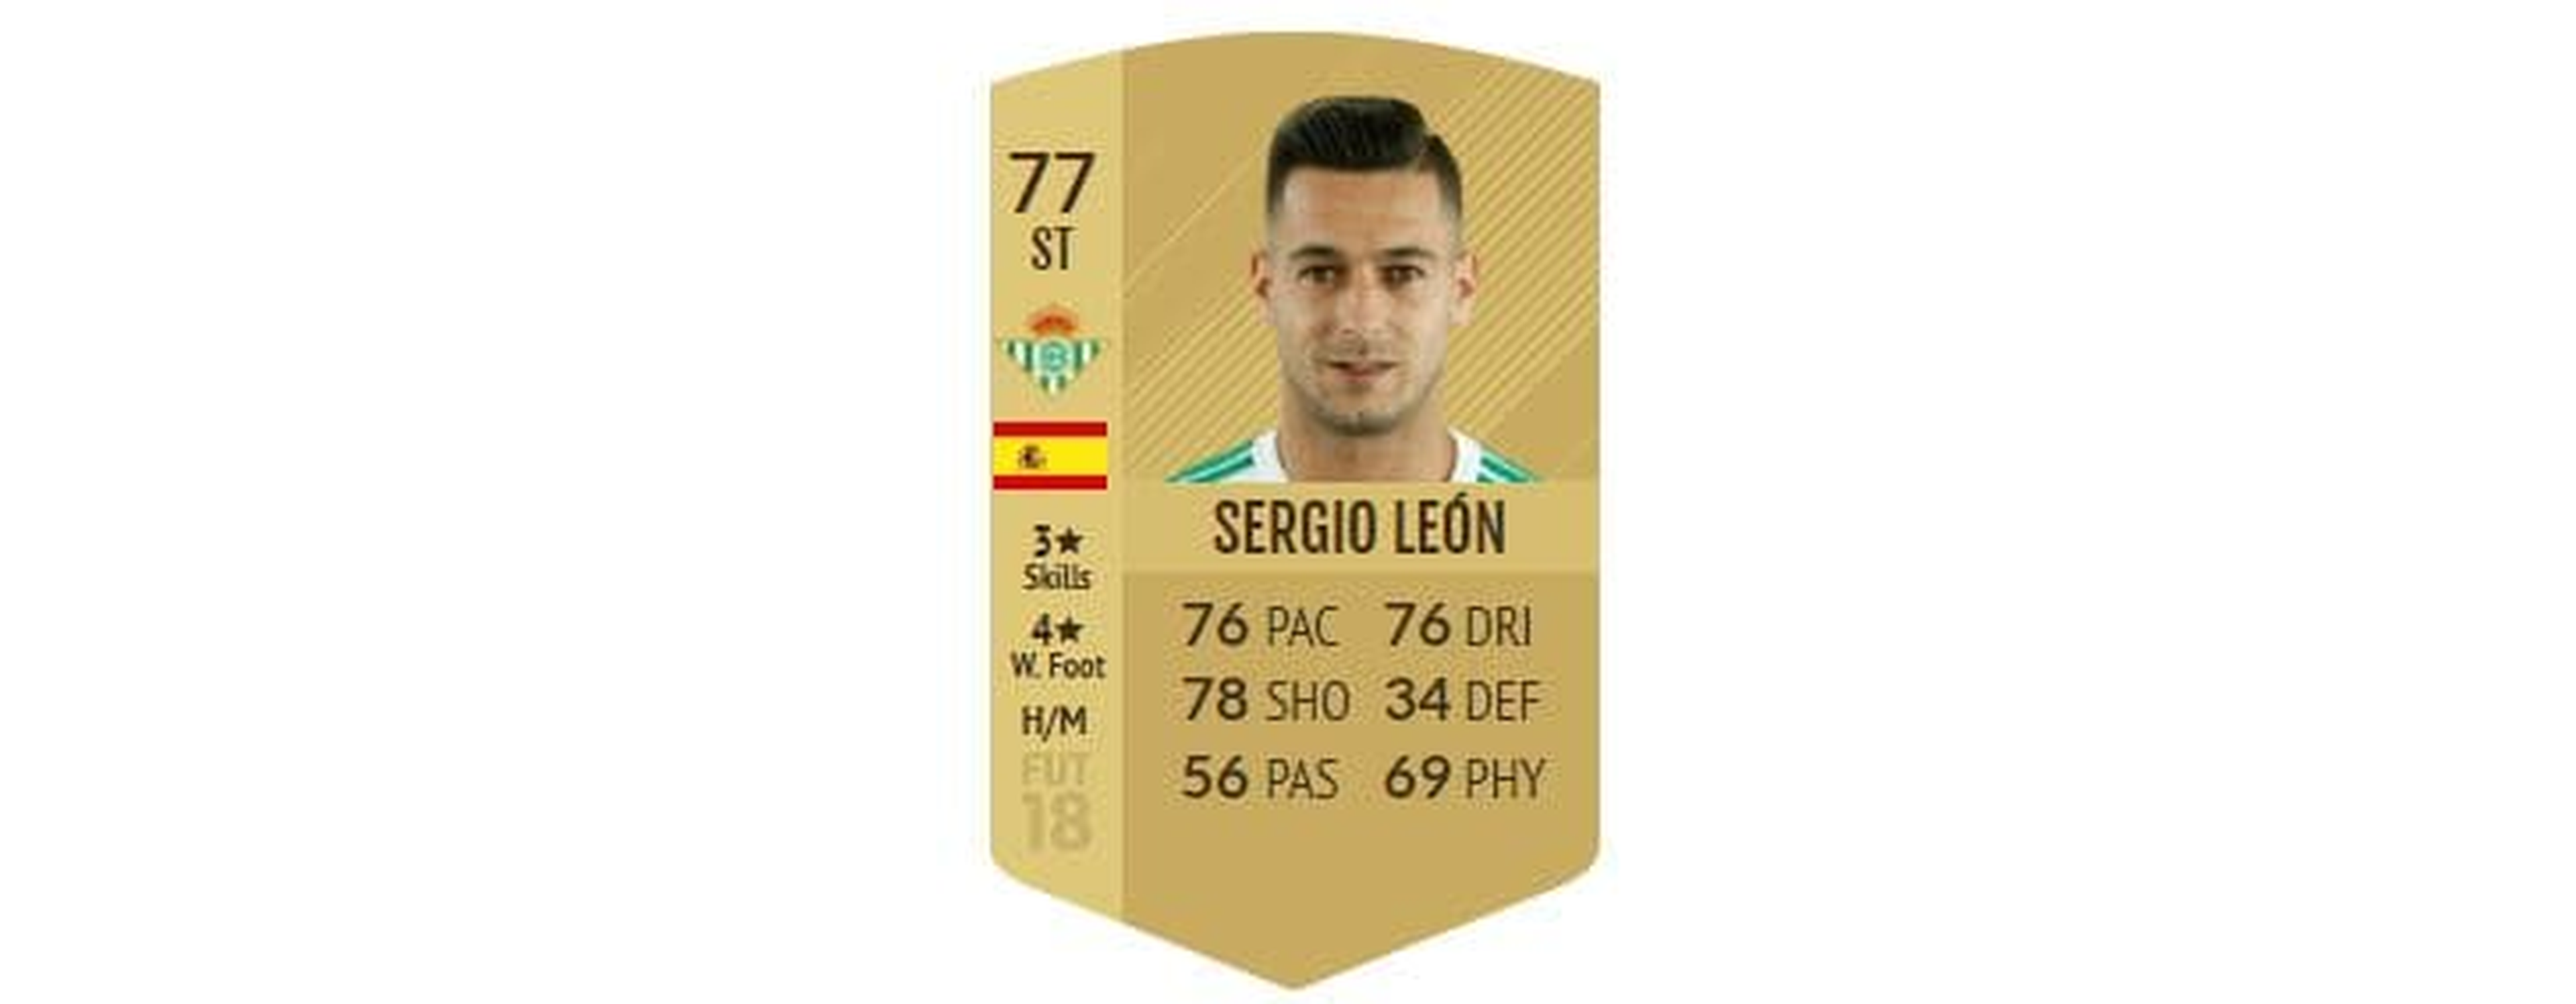 FIFA 18 - Sergio León